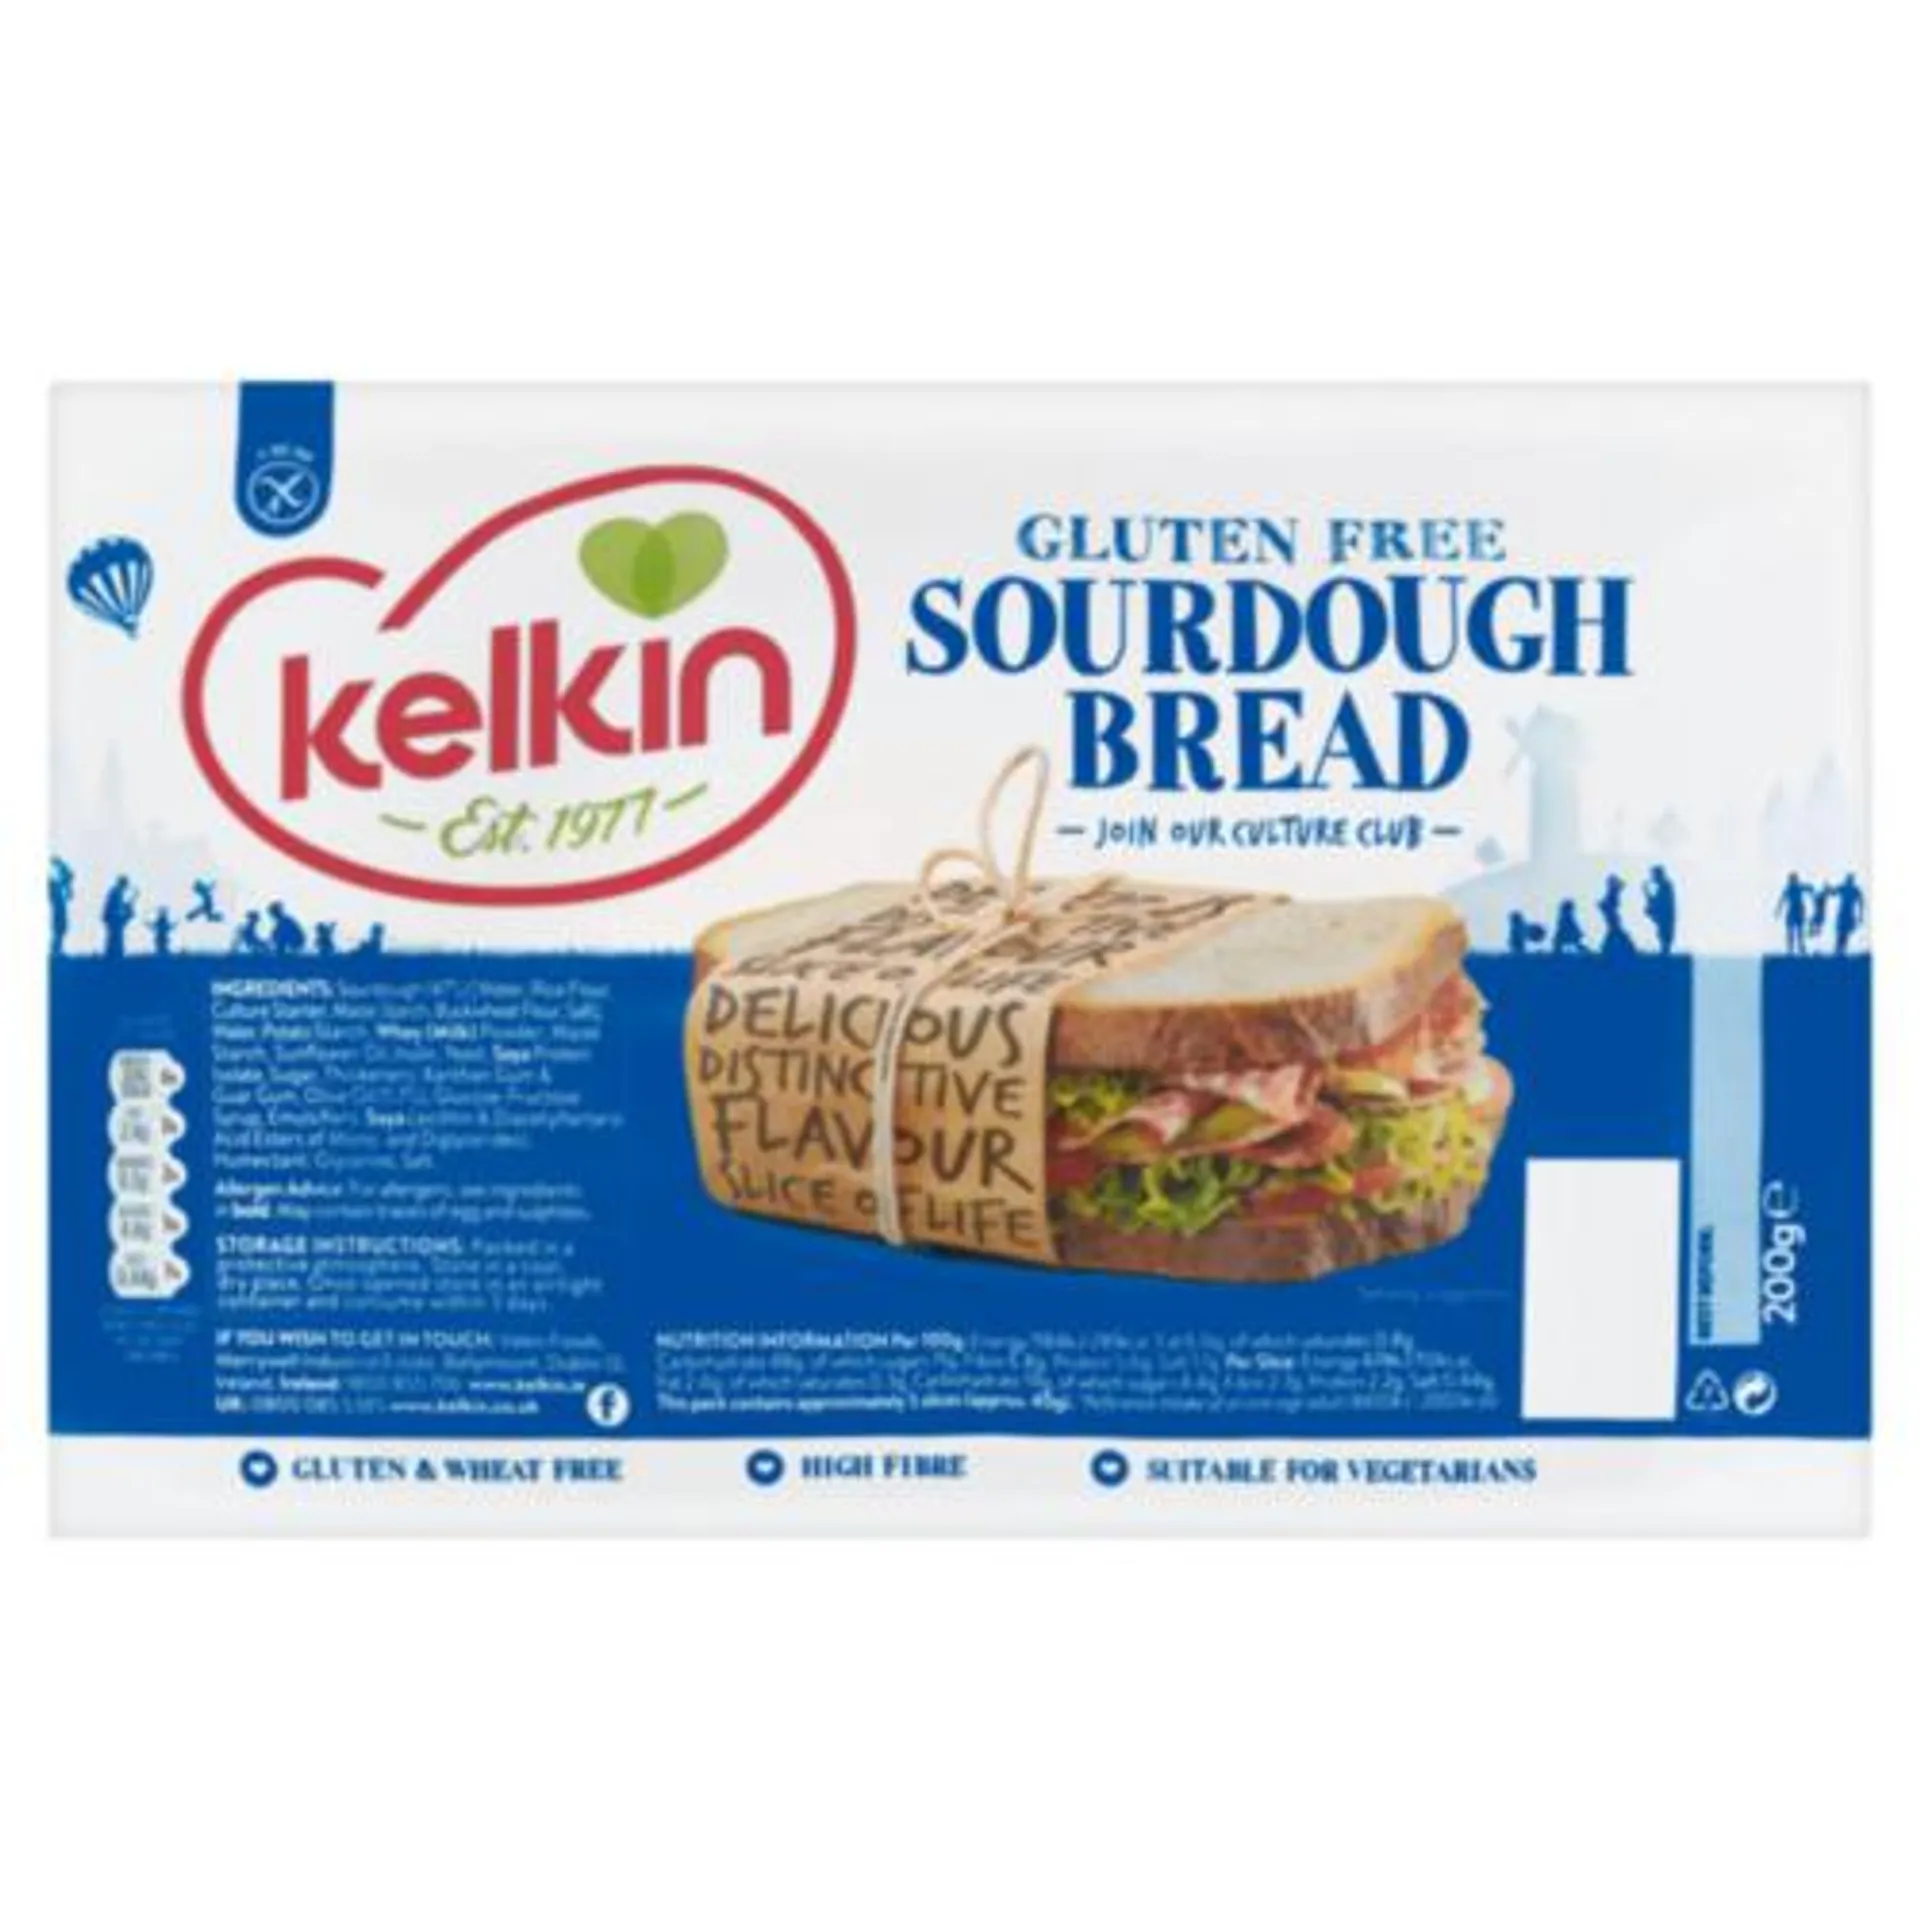 Kelkin Gluten Free Sourdough Bread